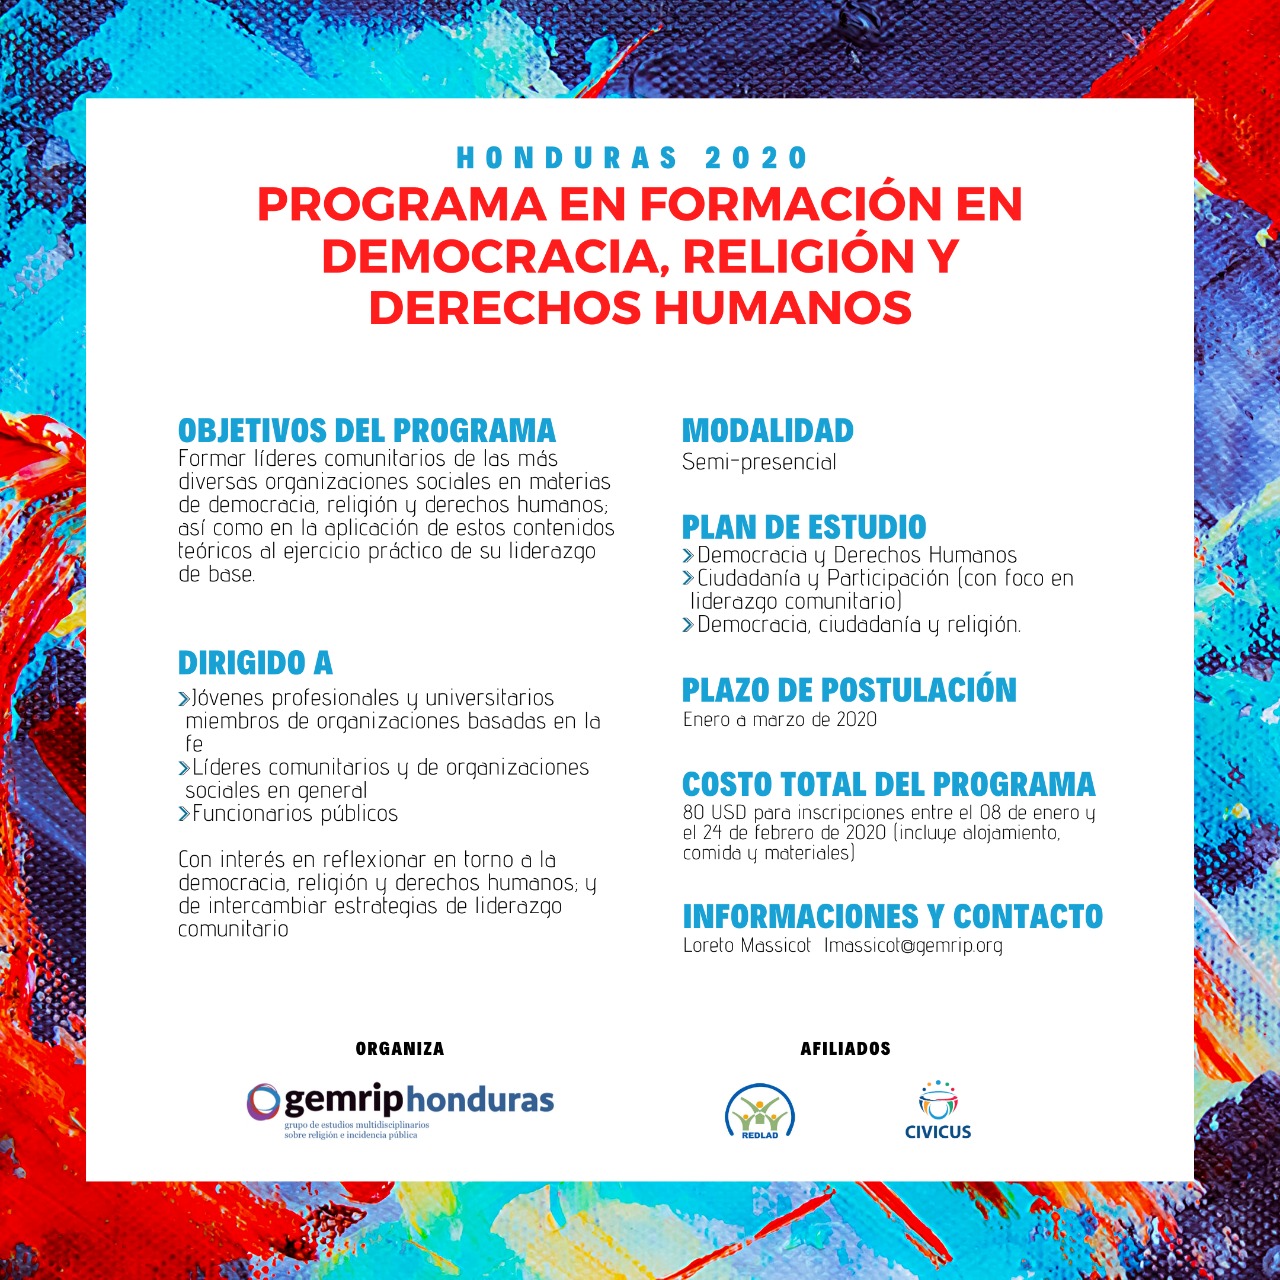 HONDURAS: PROGRAMA DE FORMACIÓN EN DEMOCRACIA, RELIGIÓN Y DERECHOS HUMANOS